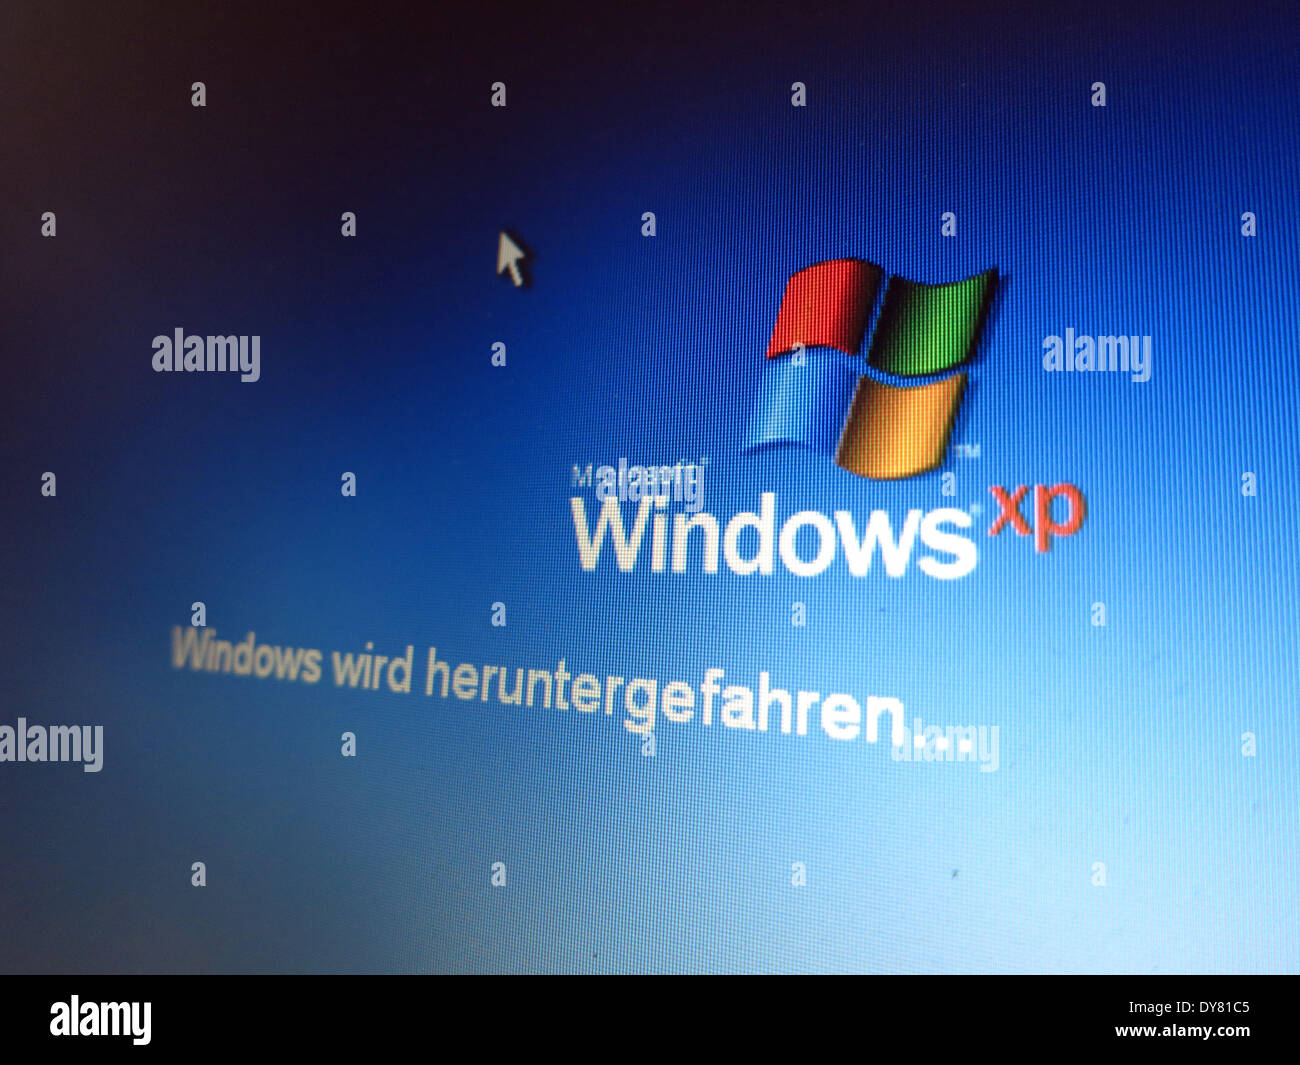 Pato Limpia la habitación piso Kassel, Alemania. 30 Mar, 2014. El logotipo del sistema operativo Windows XP  está en la pantalla por encima de la palabra 'Windows wird  heruntergefahren' (lit. Windows se está cerrando) en el monitor